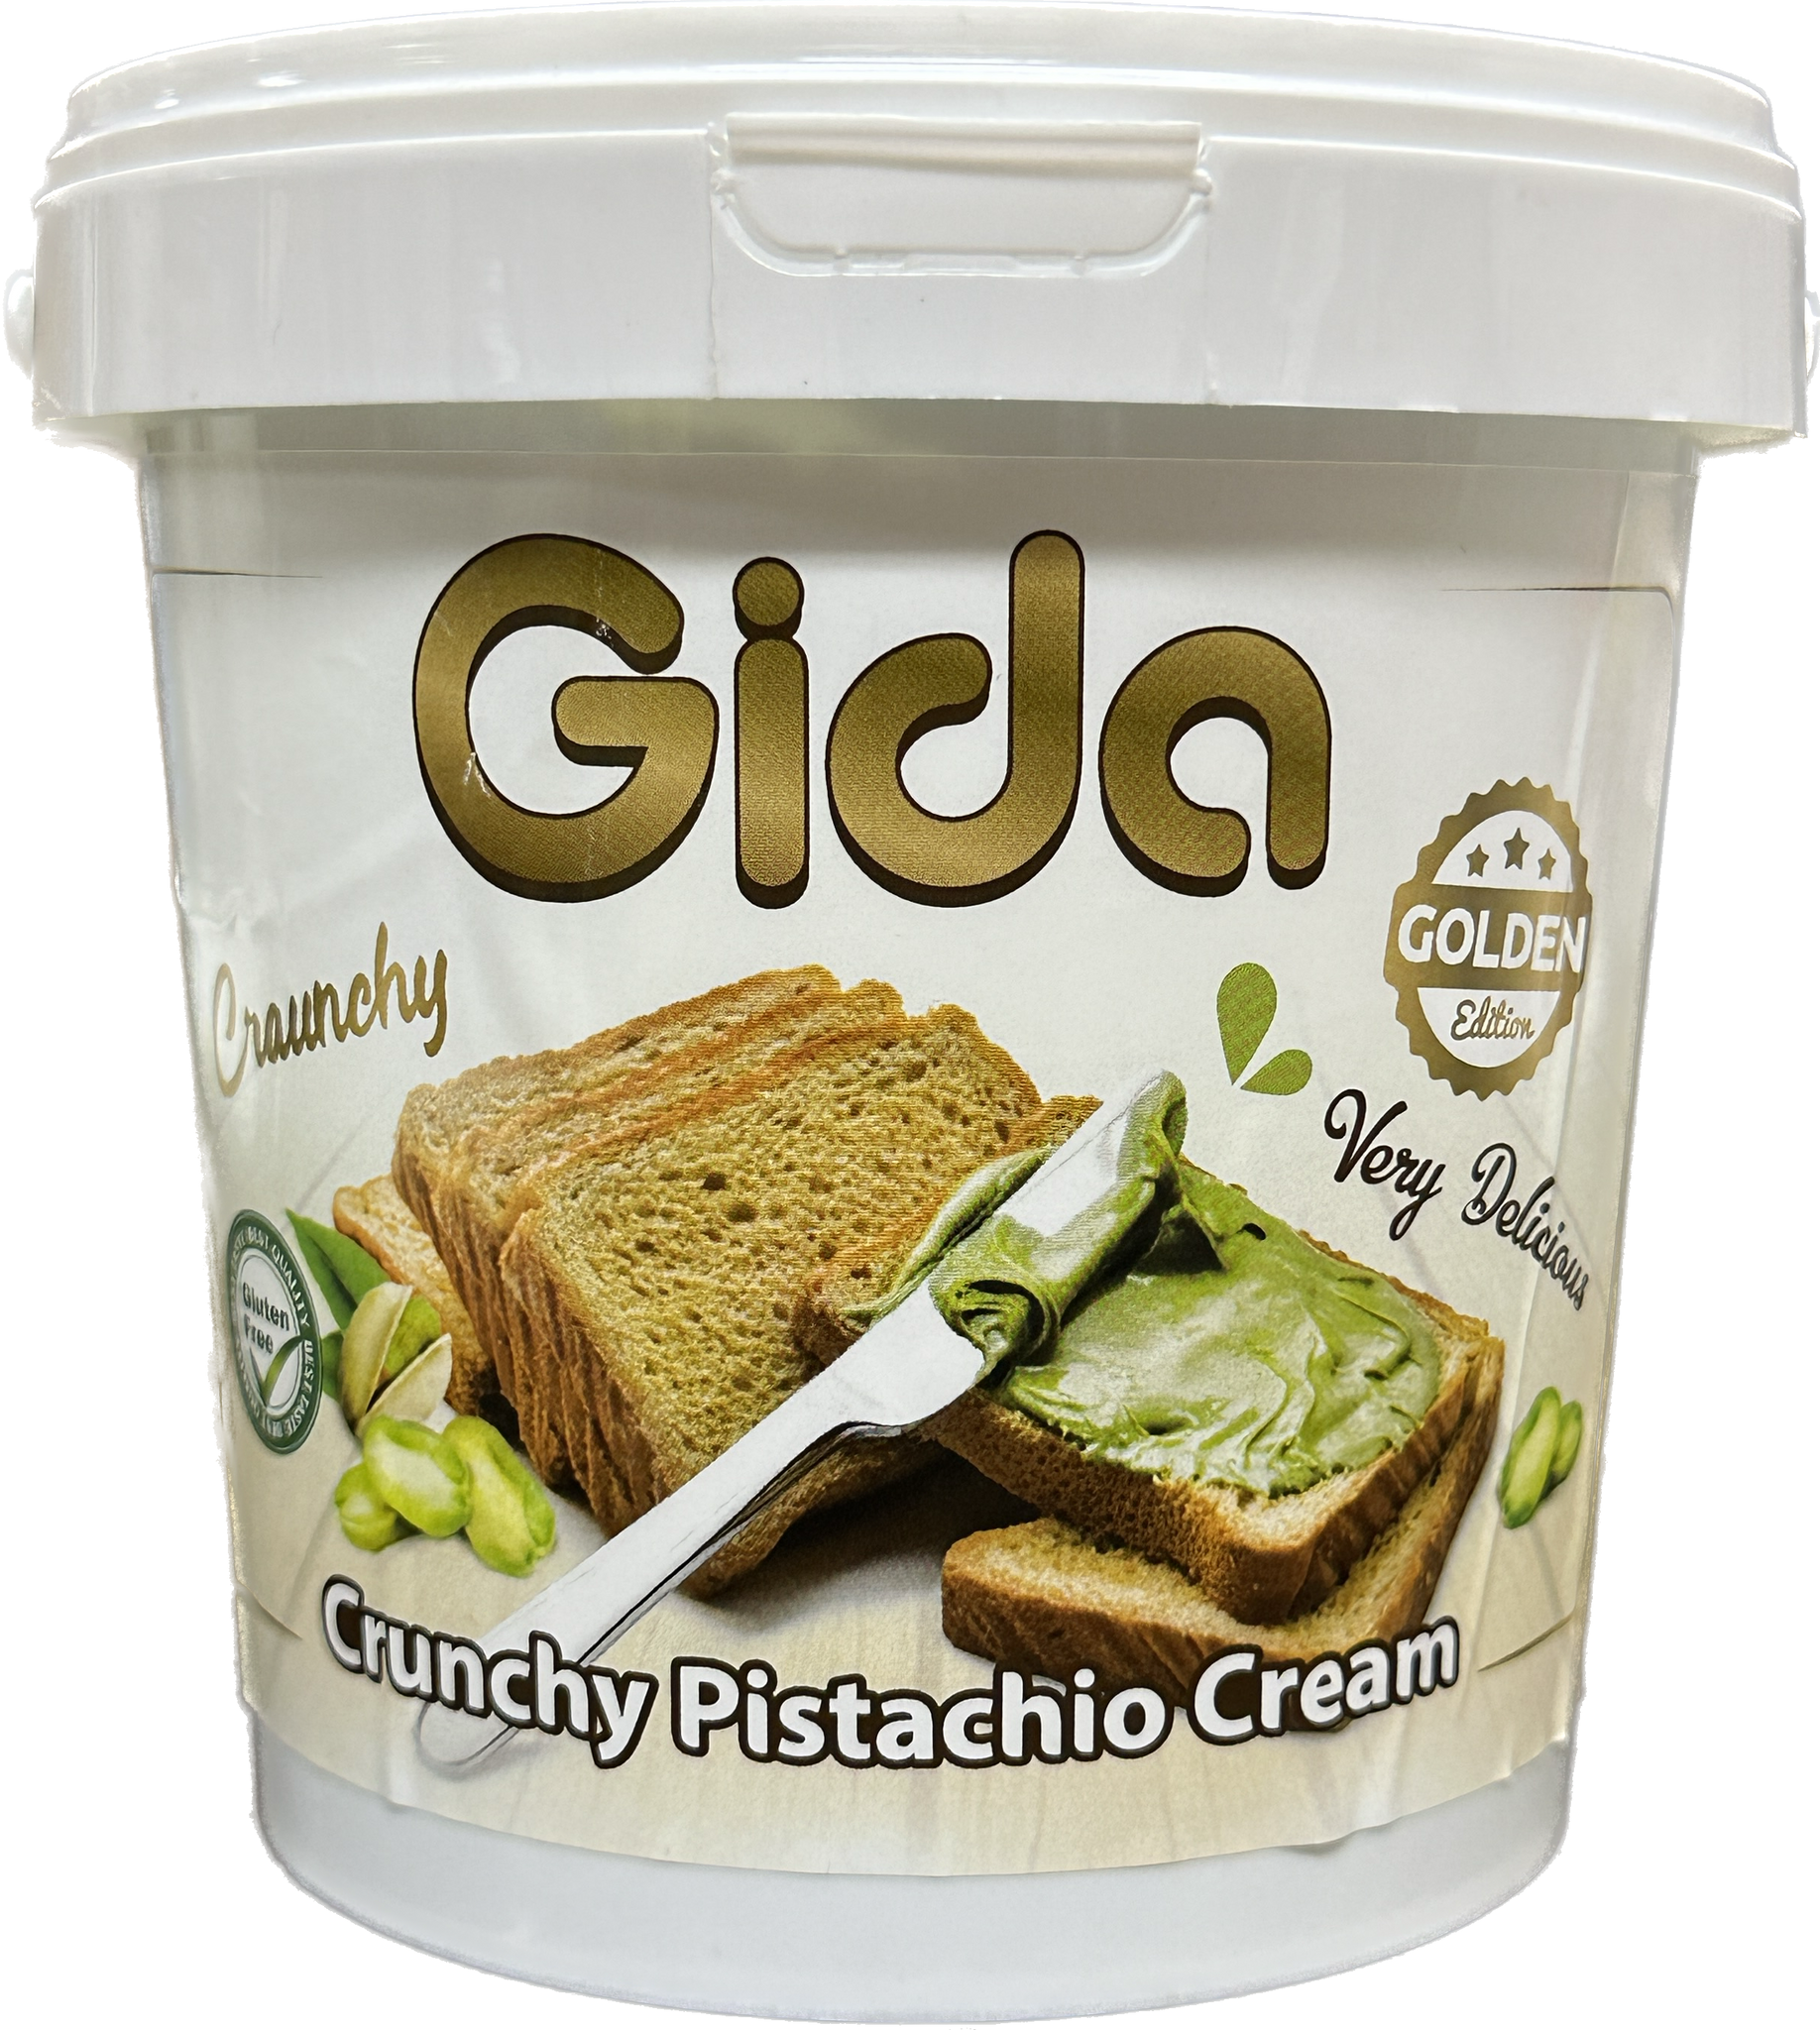 Crunchy Turkish Pistachio Cream (330g) by Gida